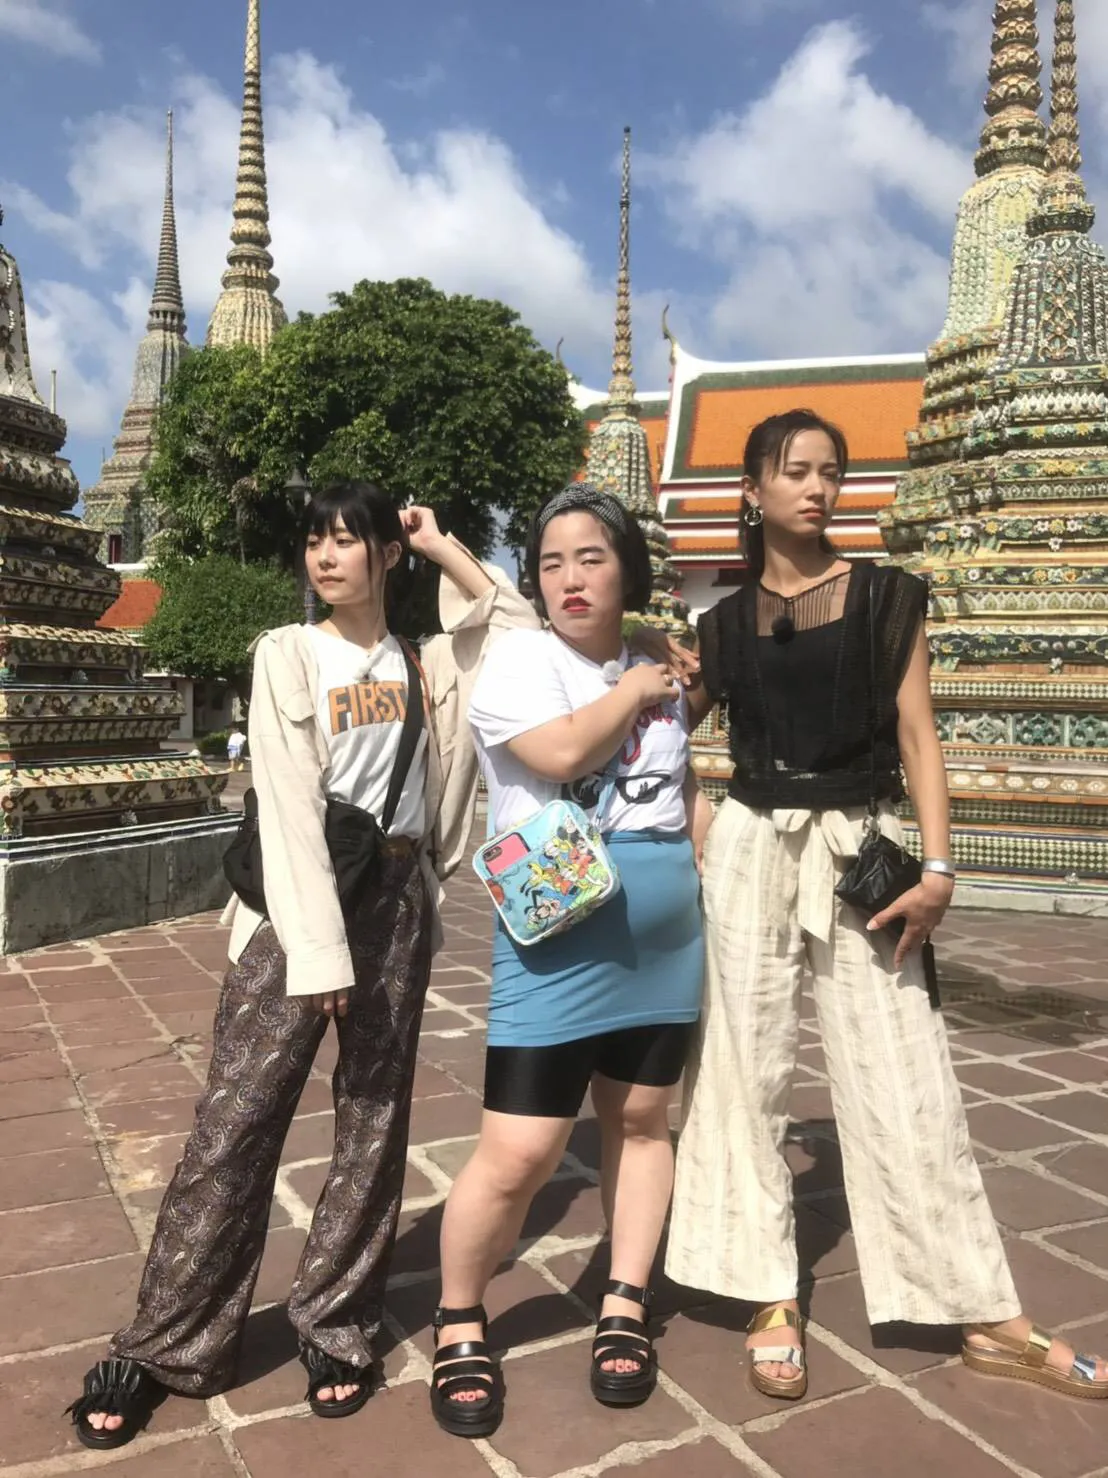 タイの地でインスタ映えするポージング